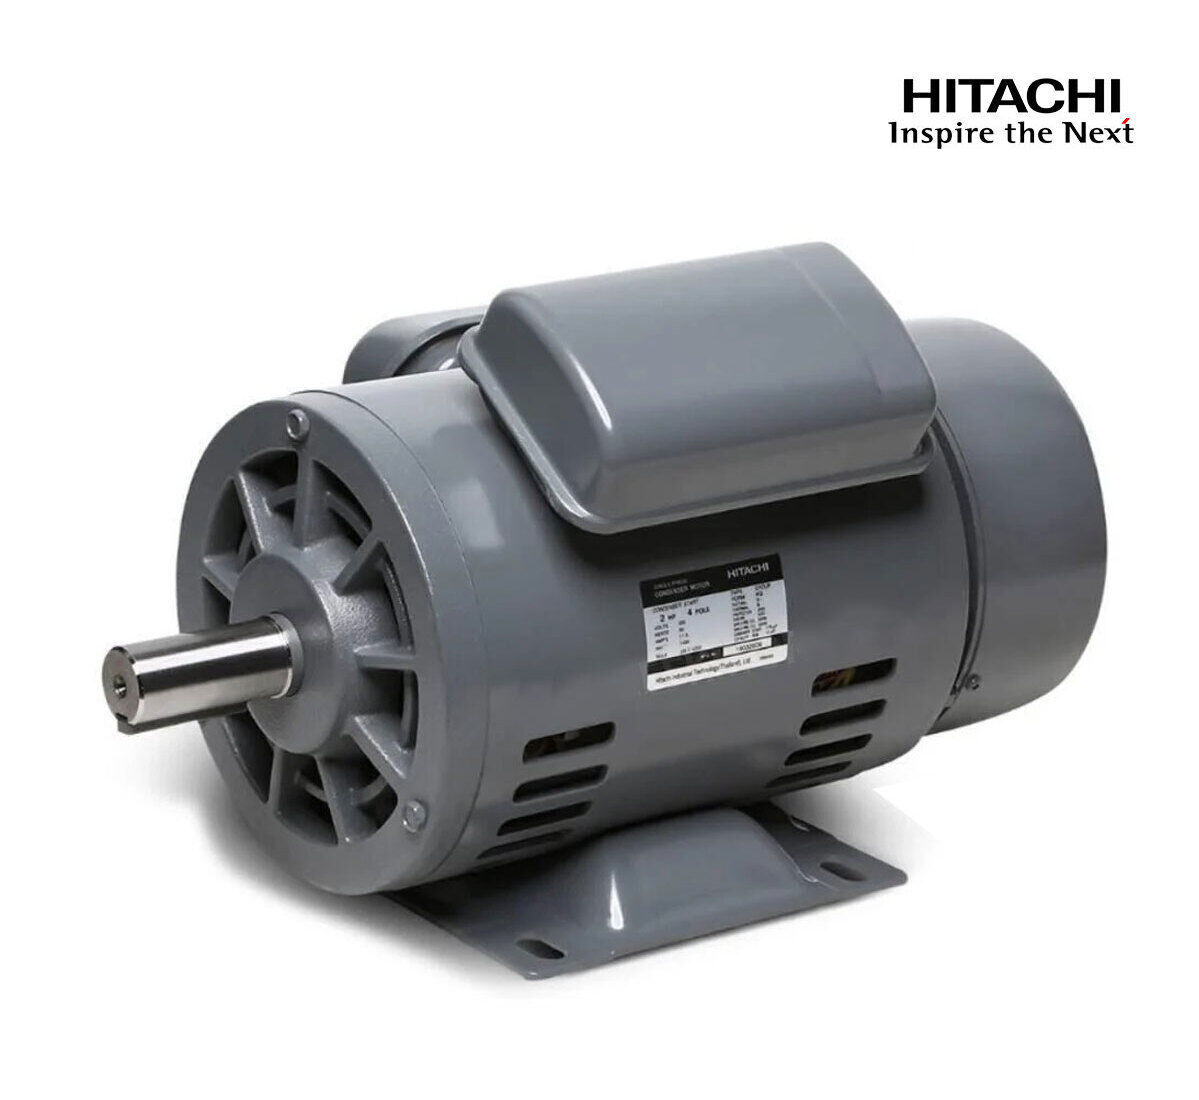 มอเตอร์ฮิตาชิของแท้ 100% HITACHI รุ่น EFOUP-KQ กำลัง 2 แรงม้า (1.5 KW.) กำลังไฟฟ้าที่ใช้ 220V ความเร็วรอบตัวเปล่า 1450 RPM แกนเพลามอเตอร์ 28 MM.รับประกัน 3 ปี มีของพร้อมจัดส่งทุกวัน